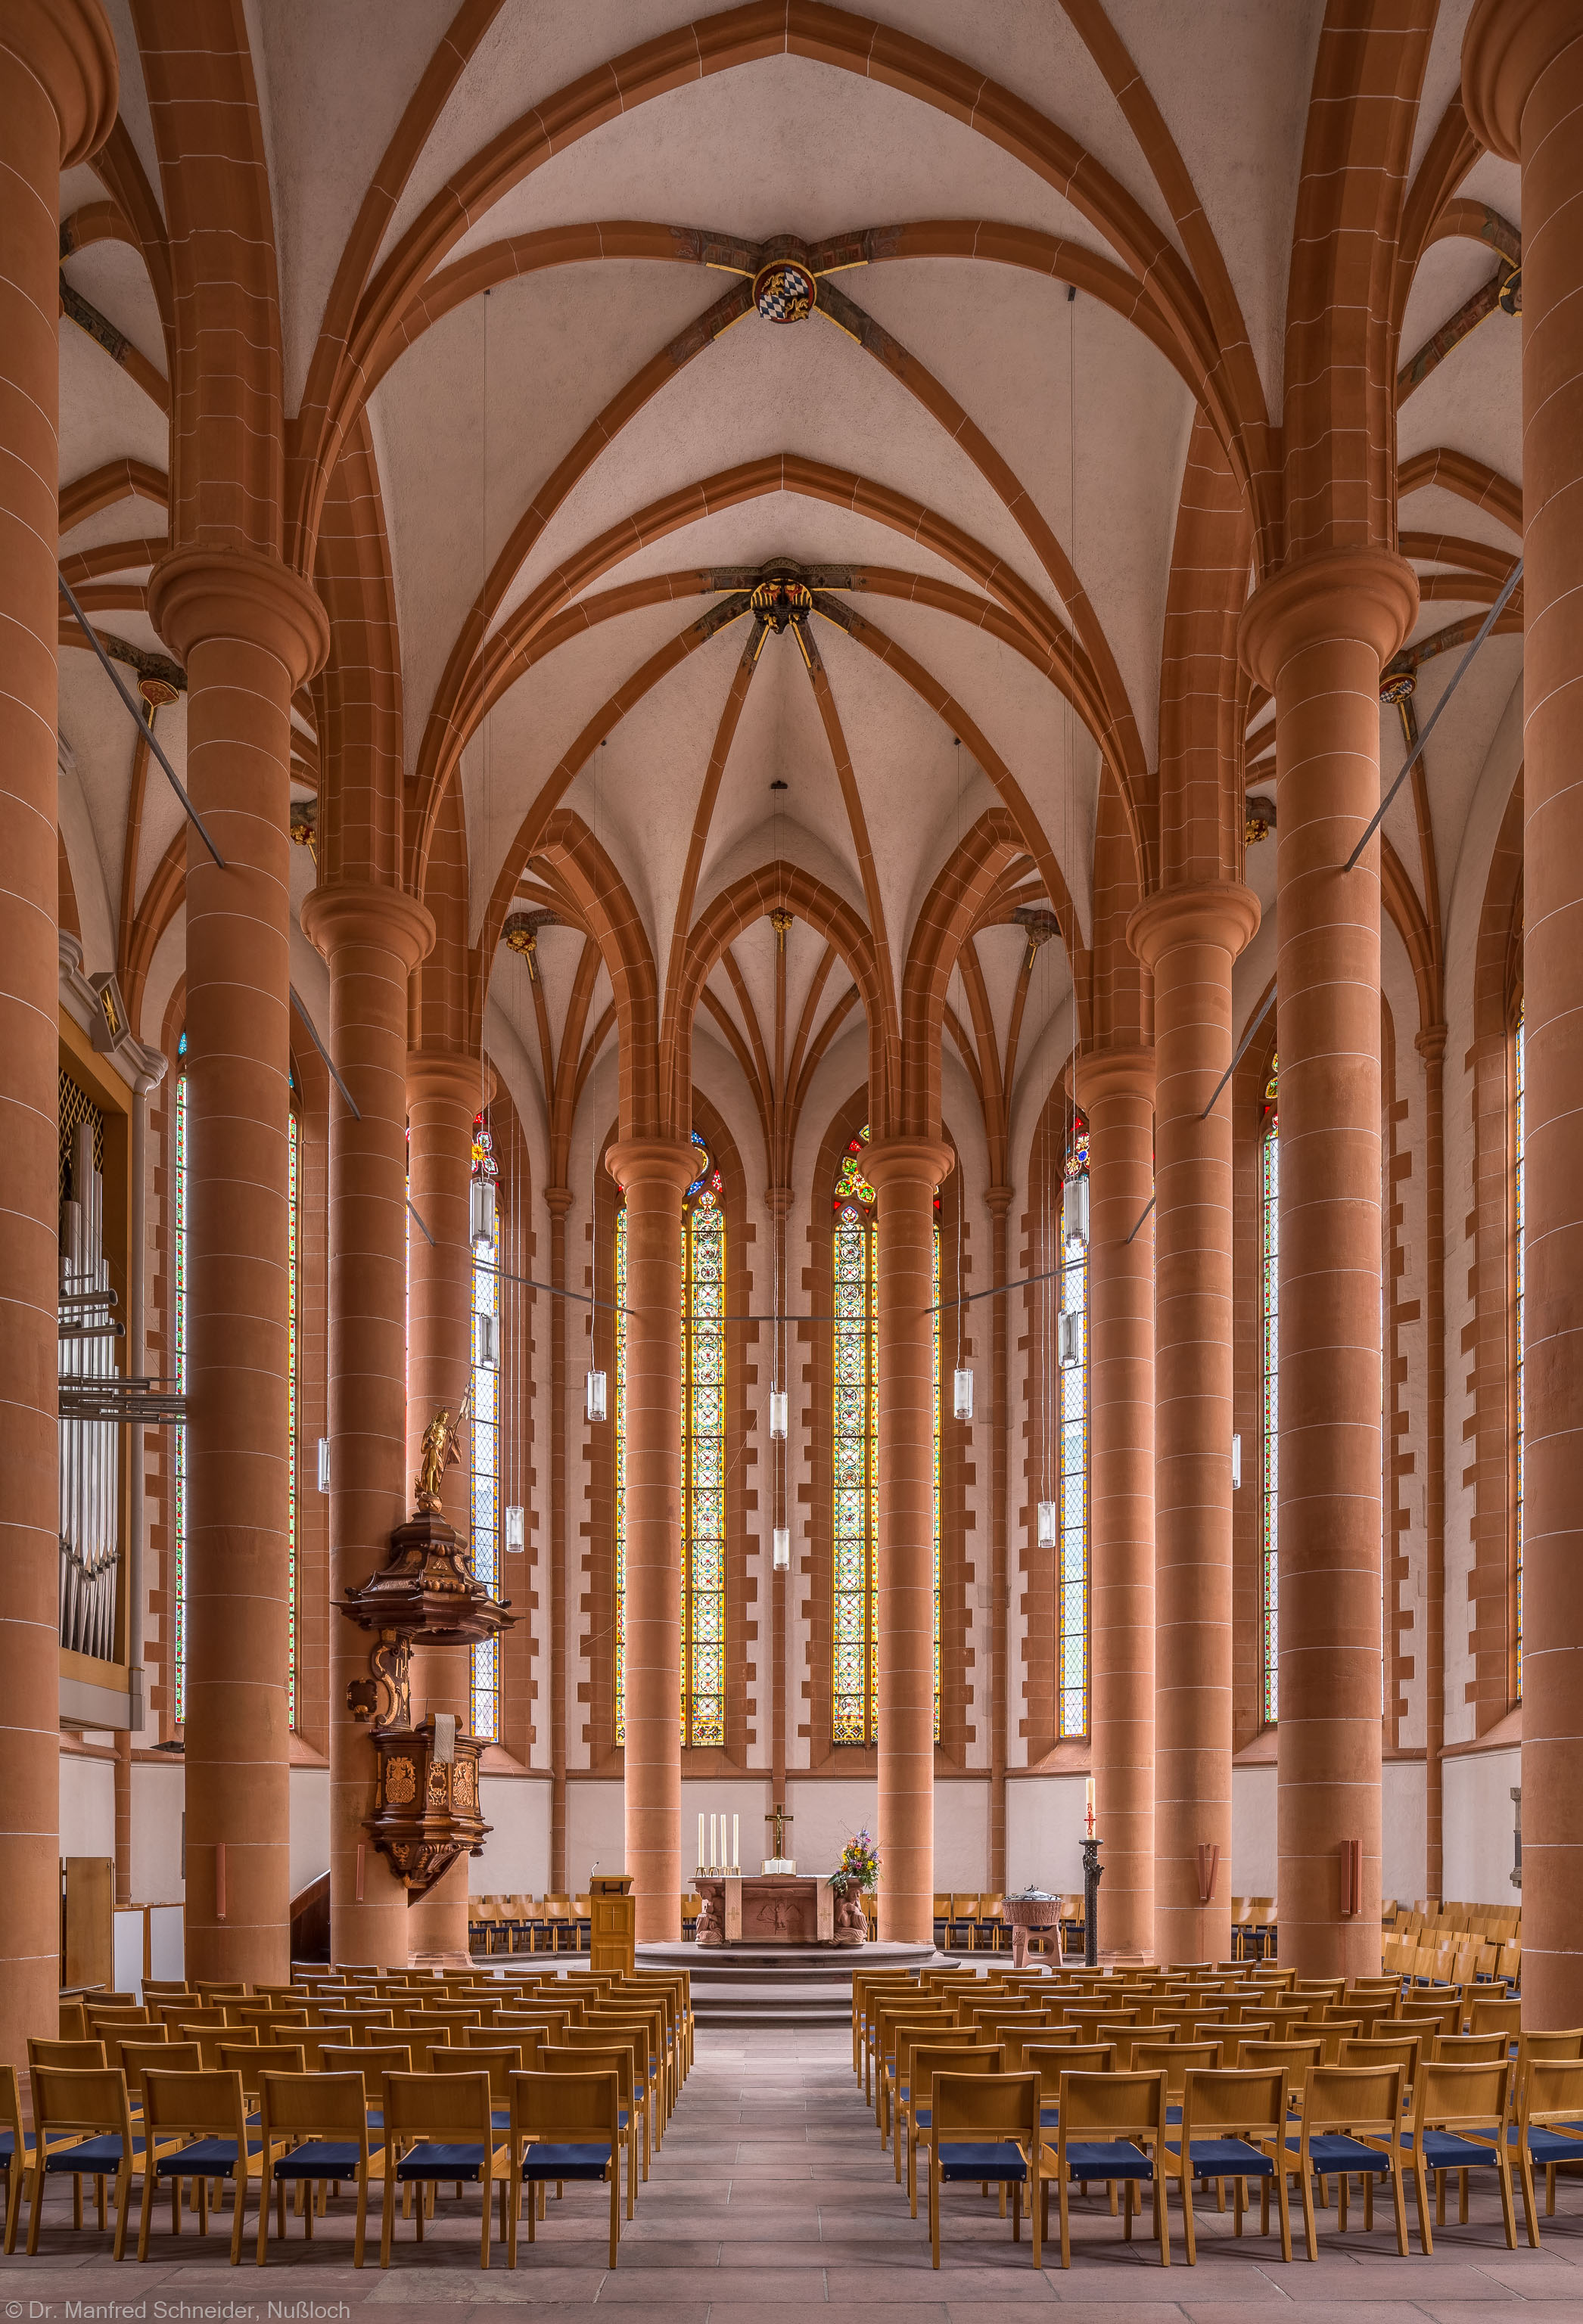 Heidelberg - Heiliggeistkirche - Chor - Blick in den Chor mit Säulen, Gewölbe, Kanzel und Altar (aufgenommen im April 2013, am Vormittag)